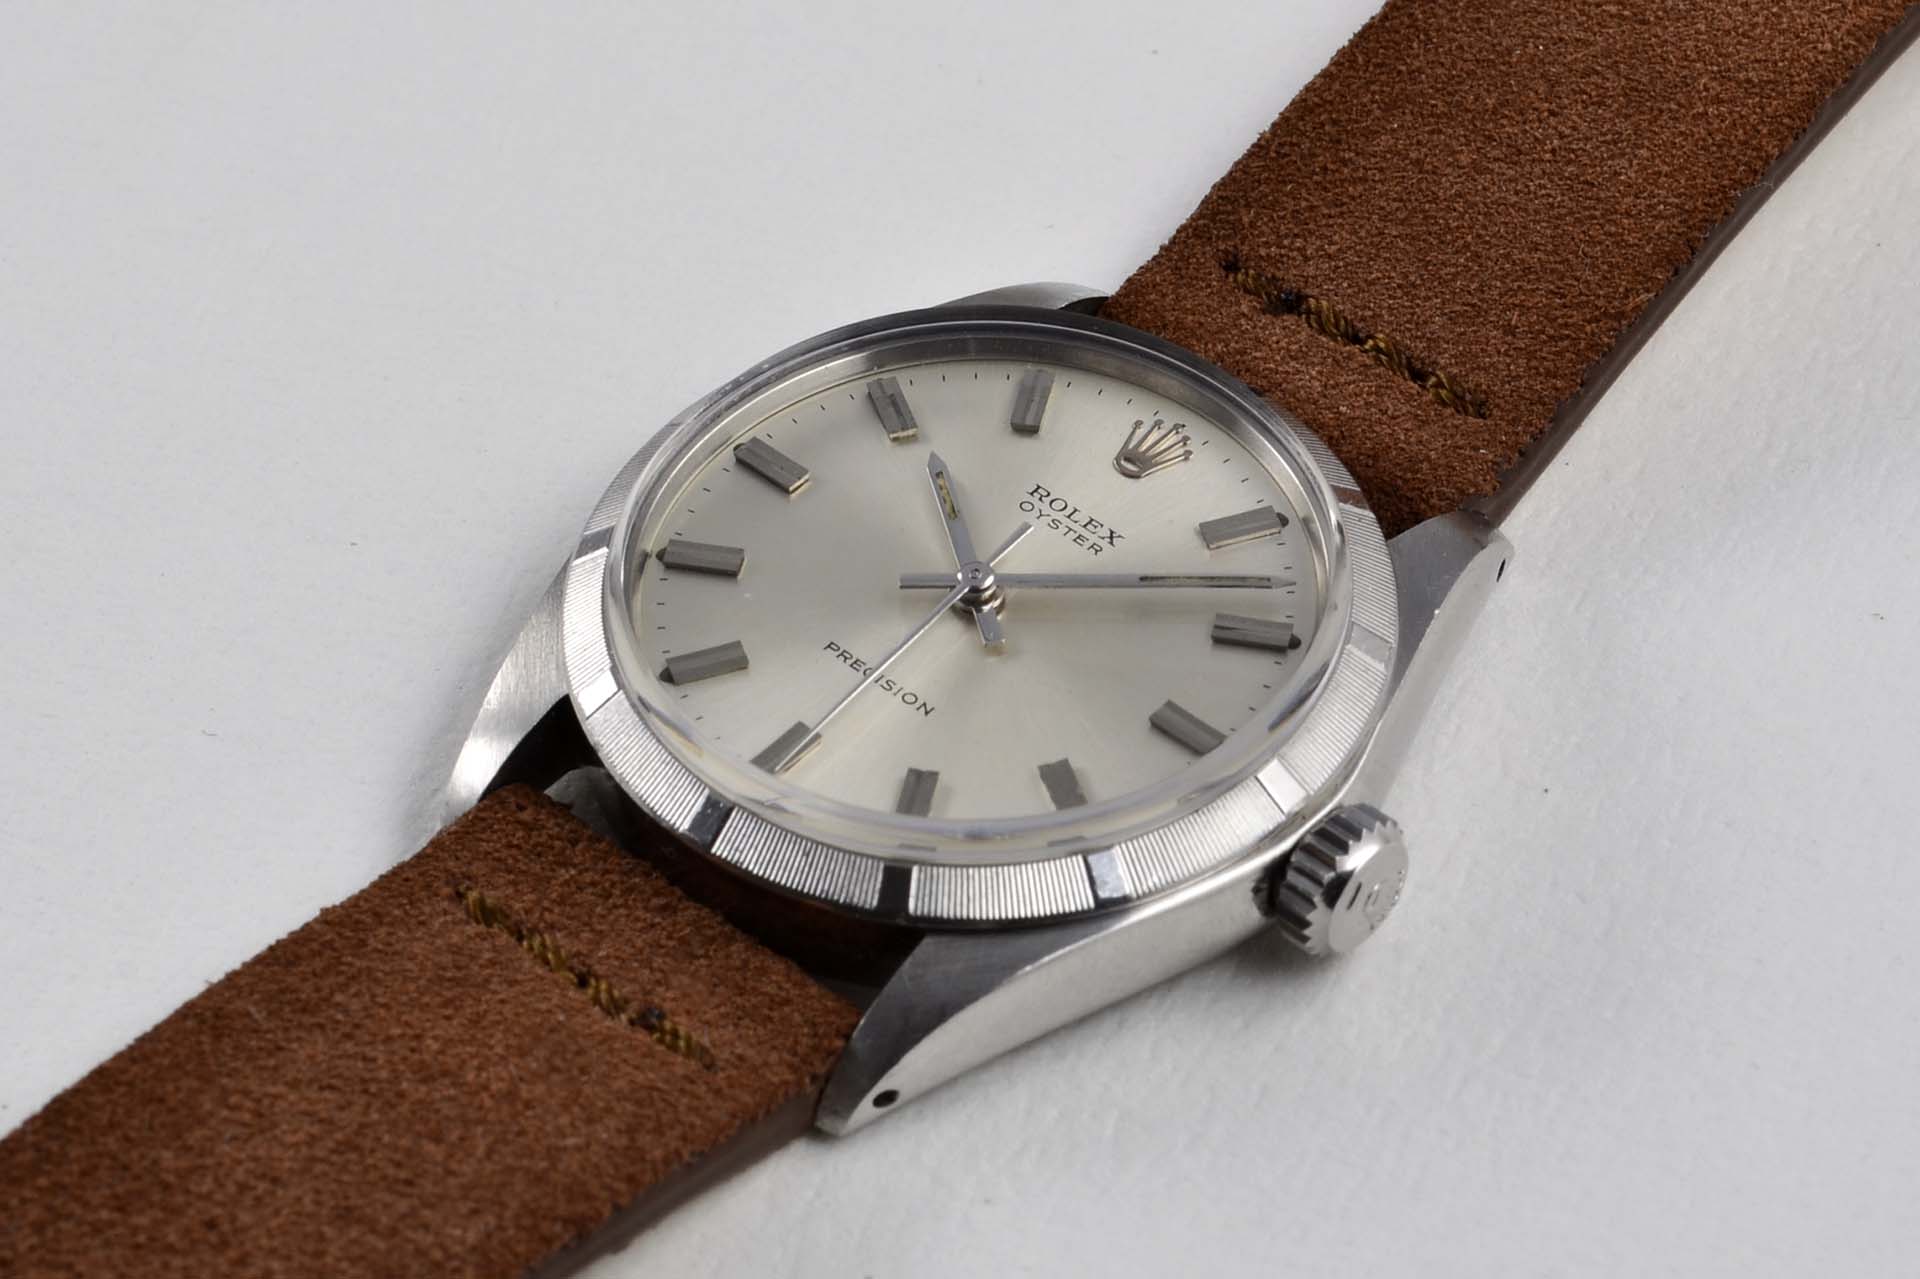 Rolex 6427 Precision oyster montre vintage lumeville horloger